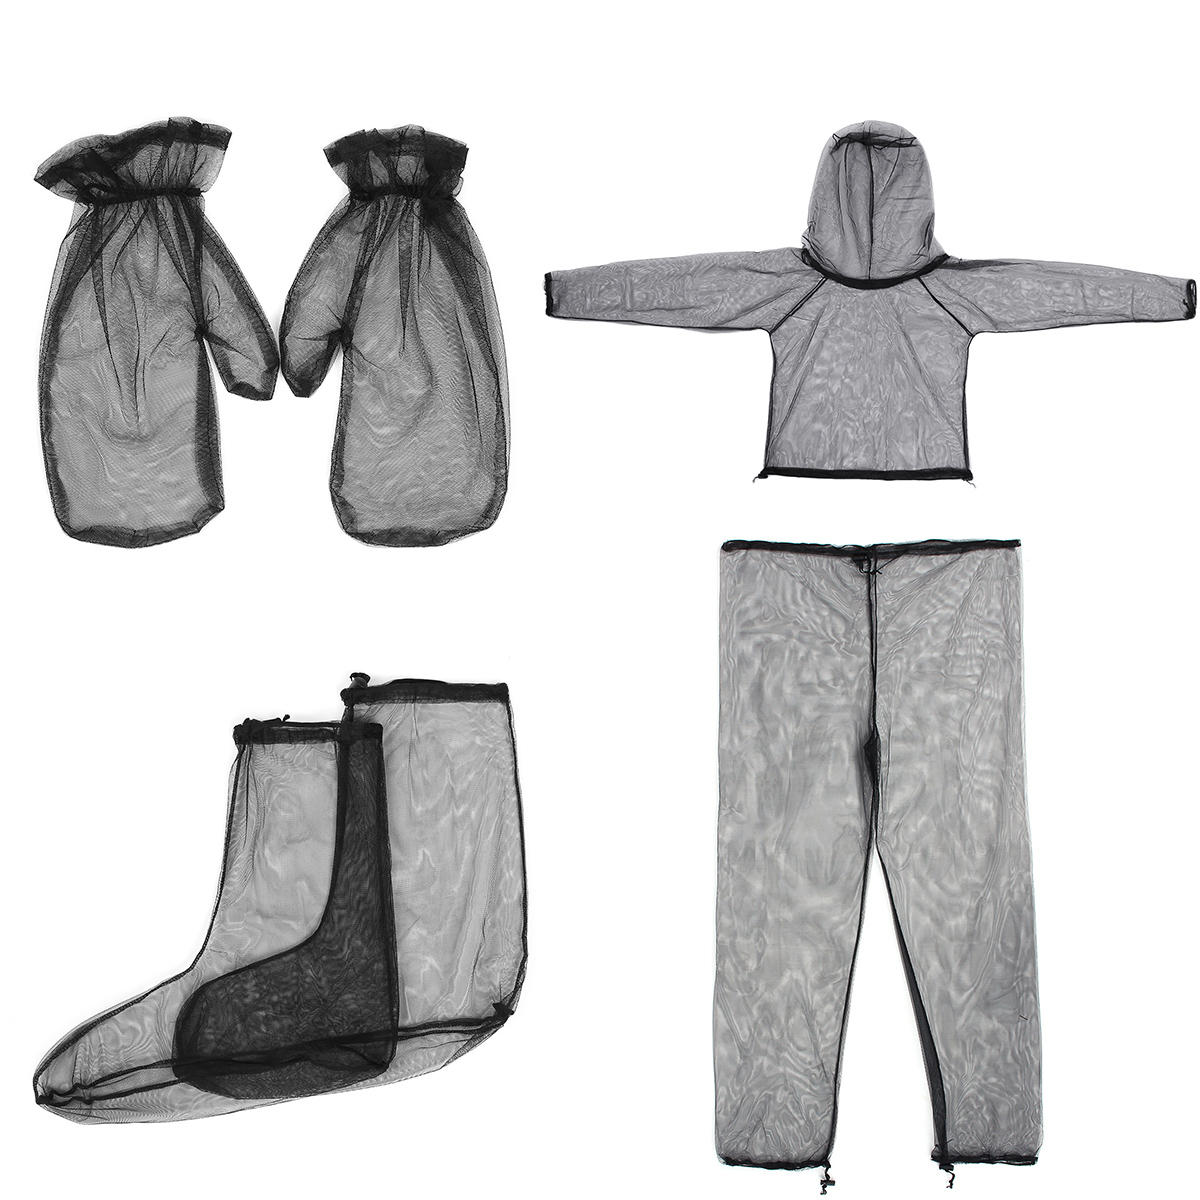 Tuta leggera da viaggio e campeggio all'aperto in rete ad alta densità, composta da giacca, pantaloni, guanti e calze anti-zanzare.